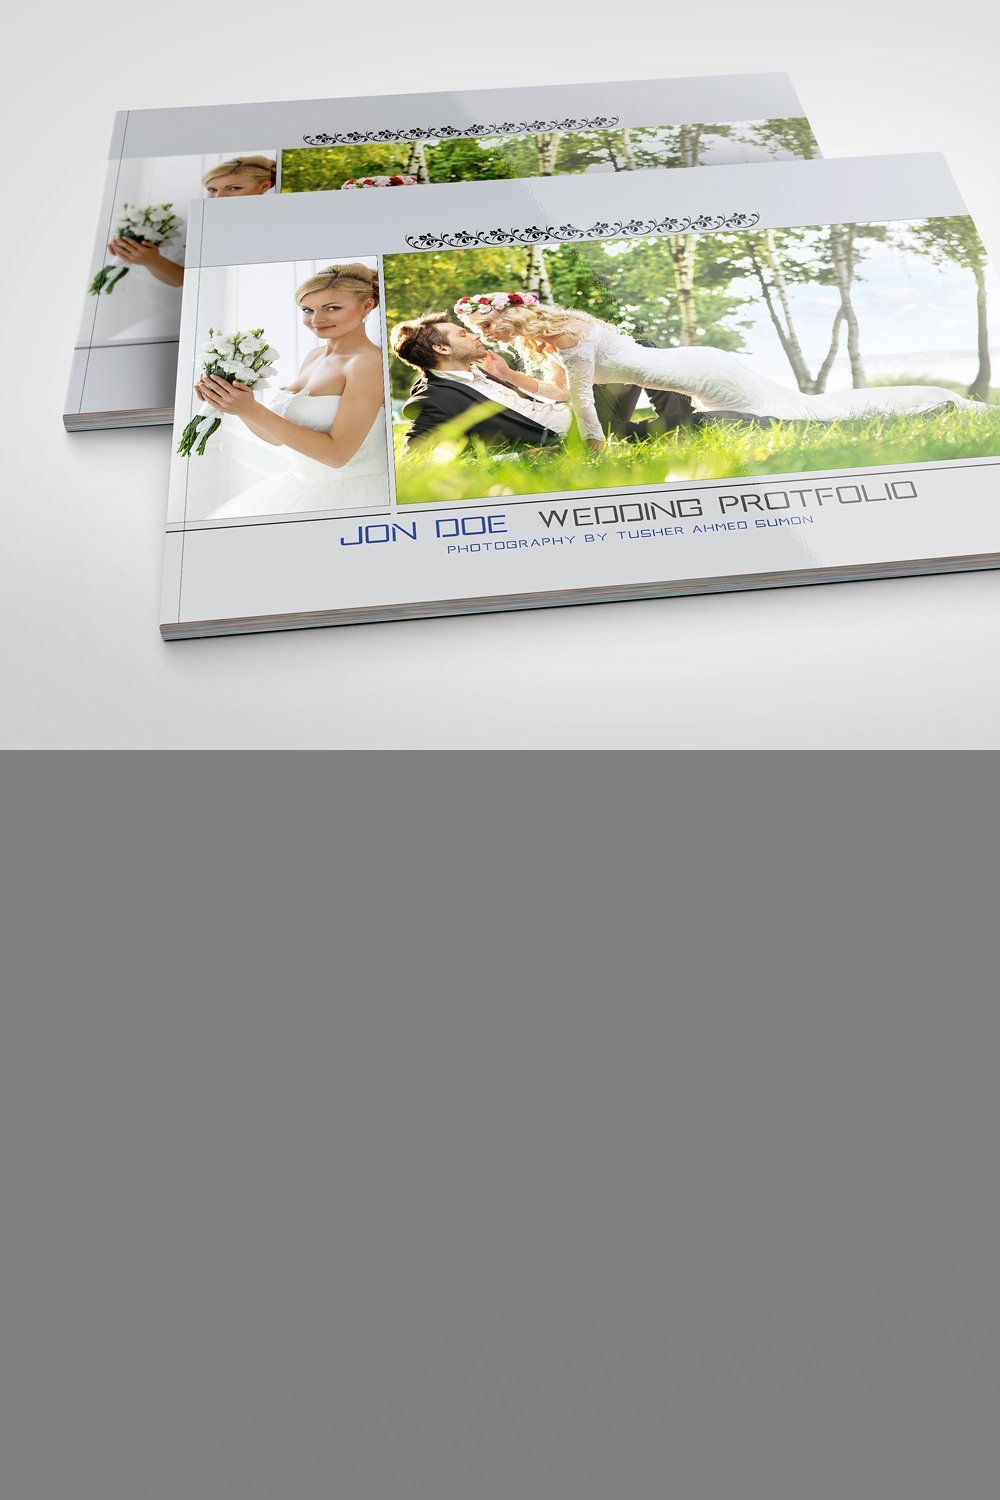 Wedding Protfolio Brochures pinterest preview image.